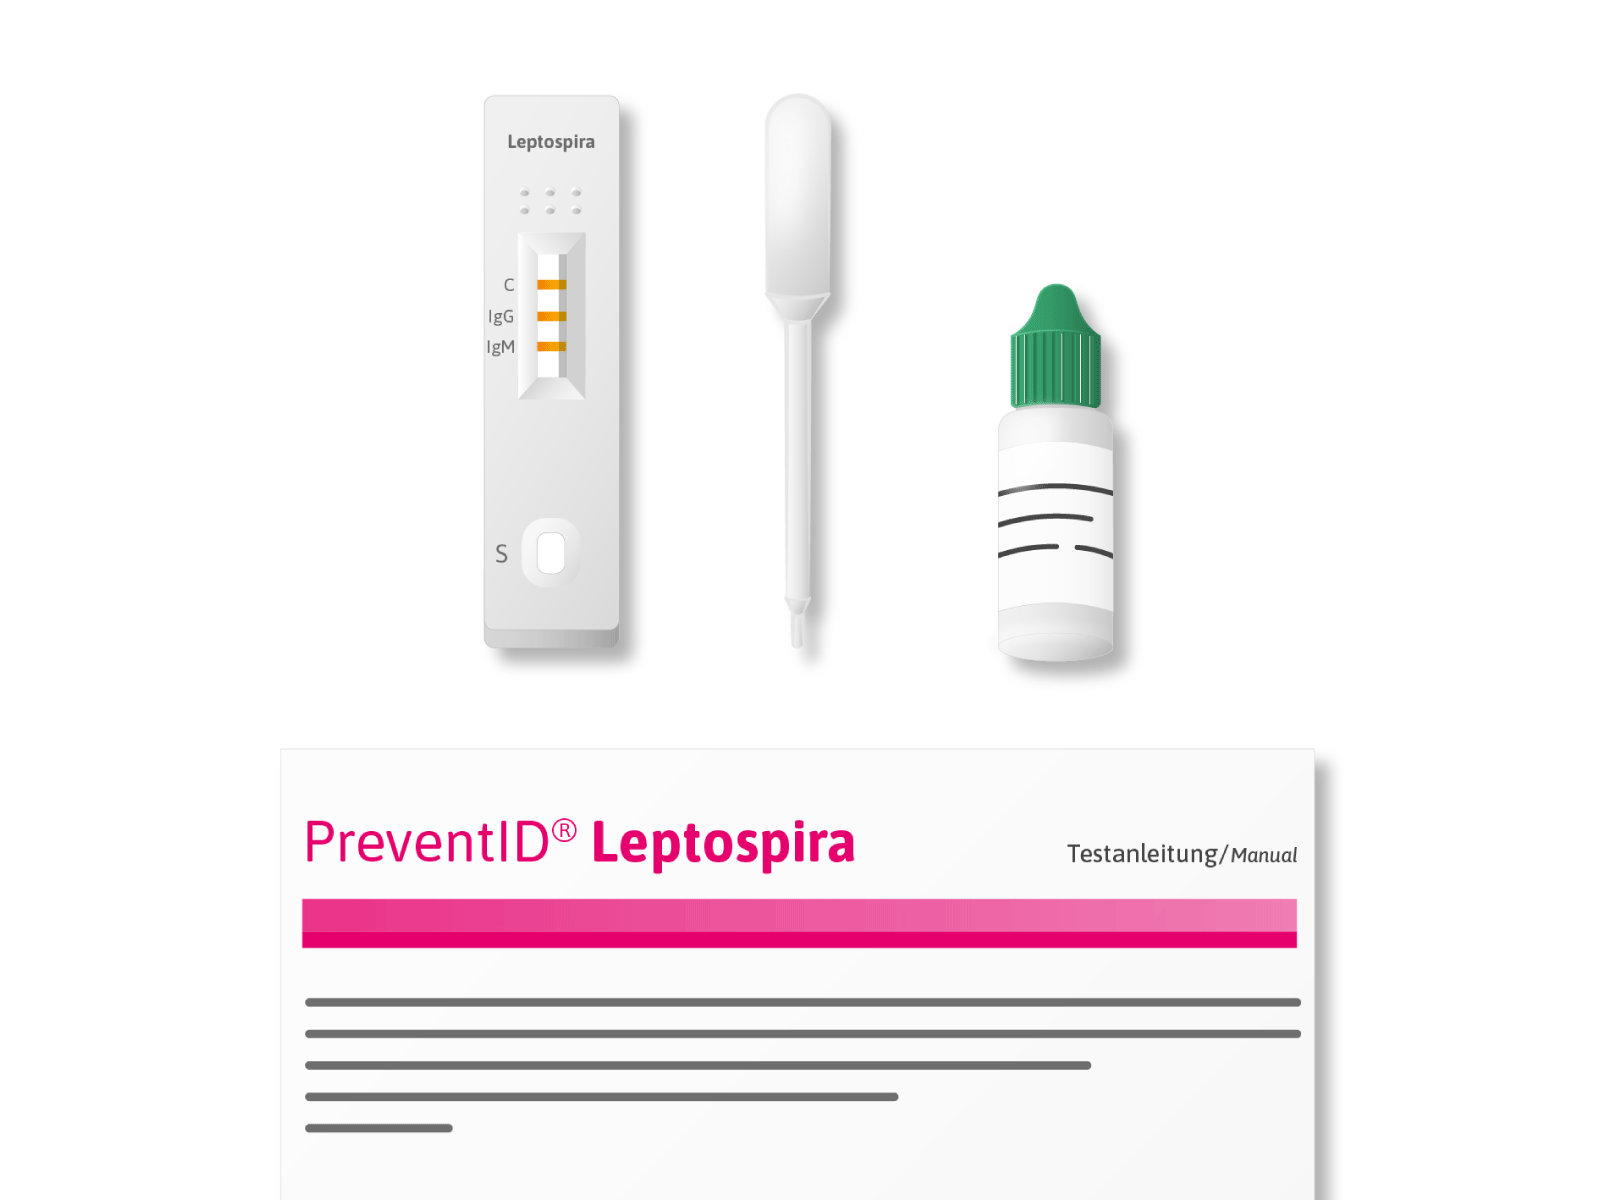 PreventID® Leptospira